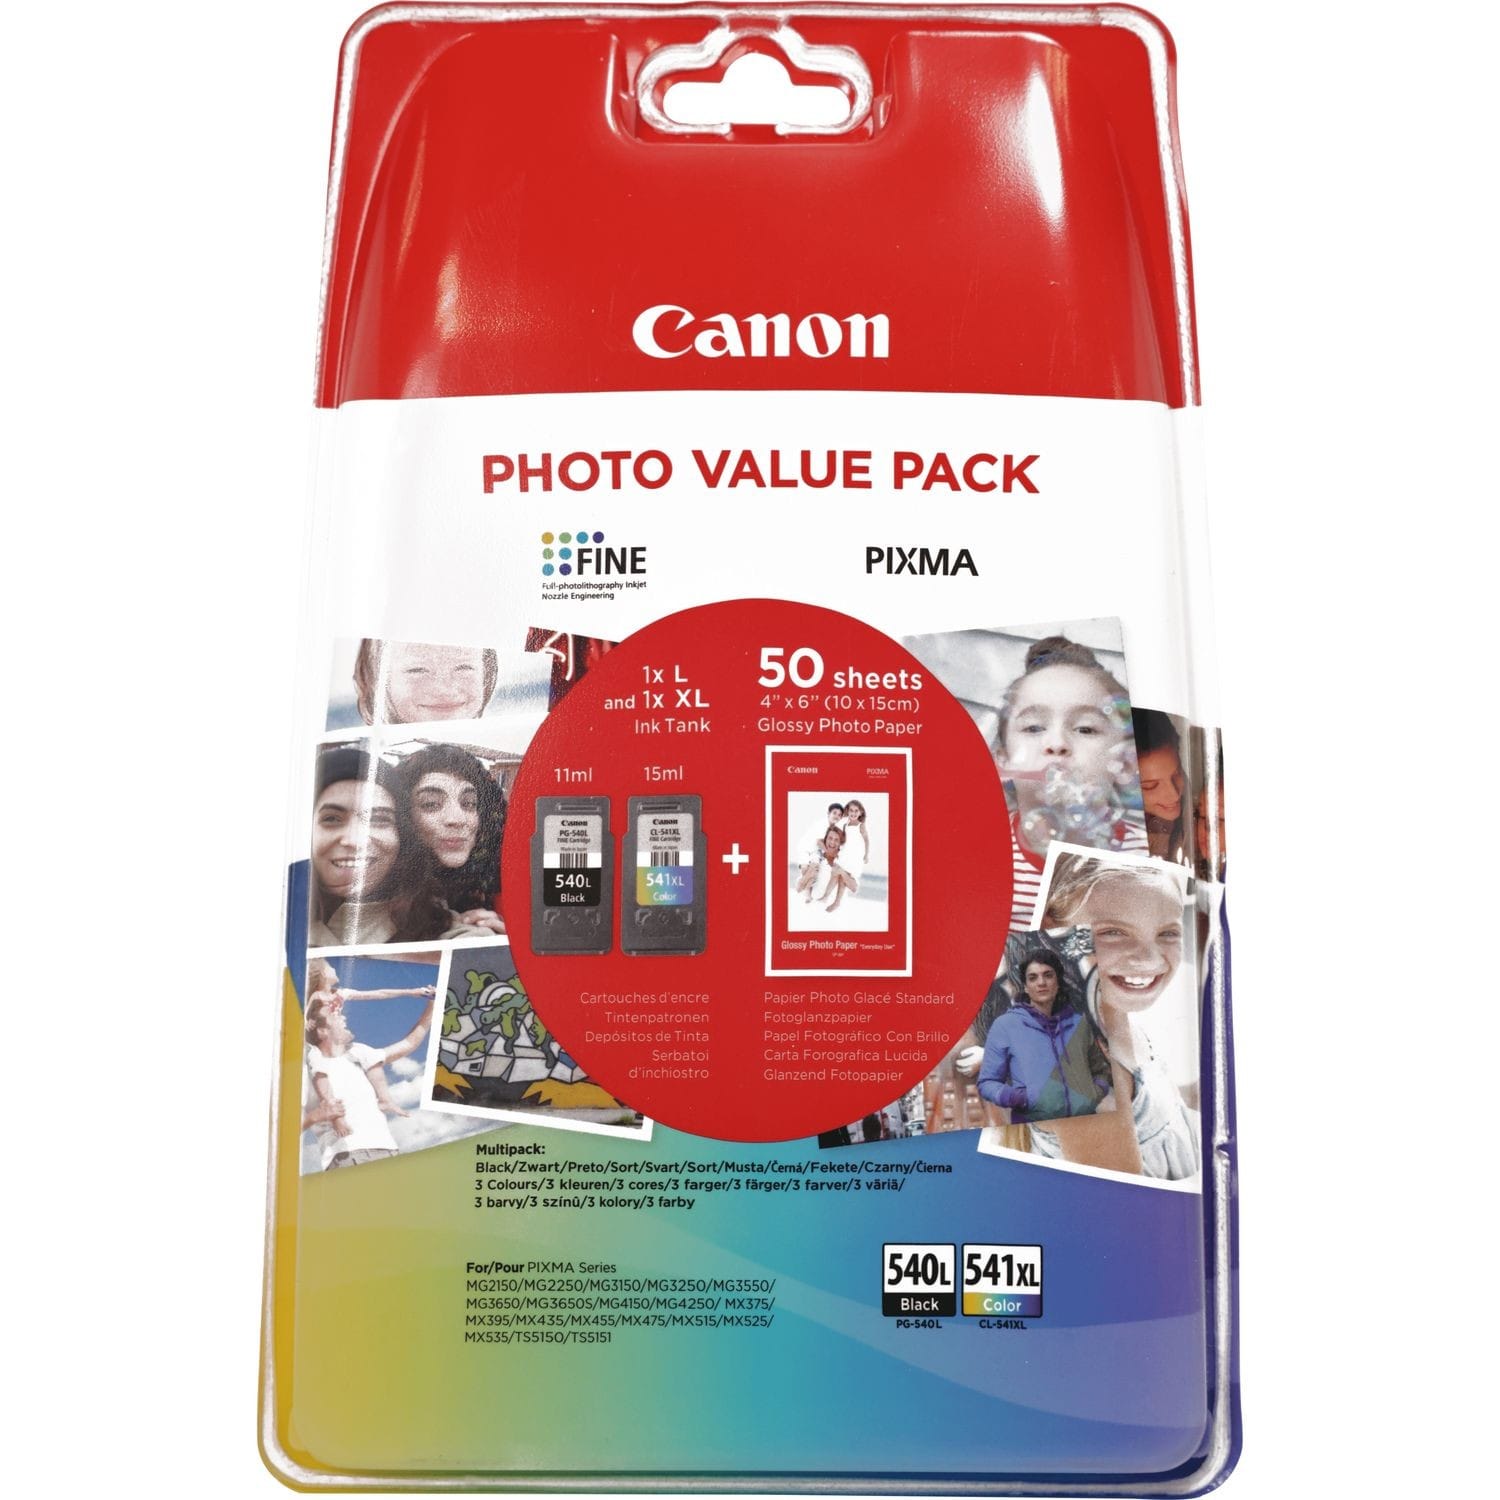 Cartouche d'encre noire à haut rendement Canon PG-540XL — Boutique